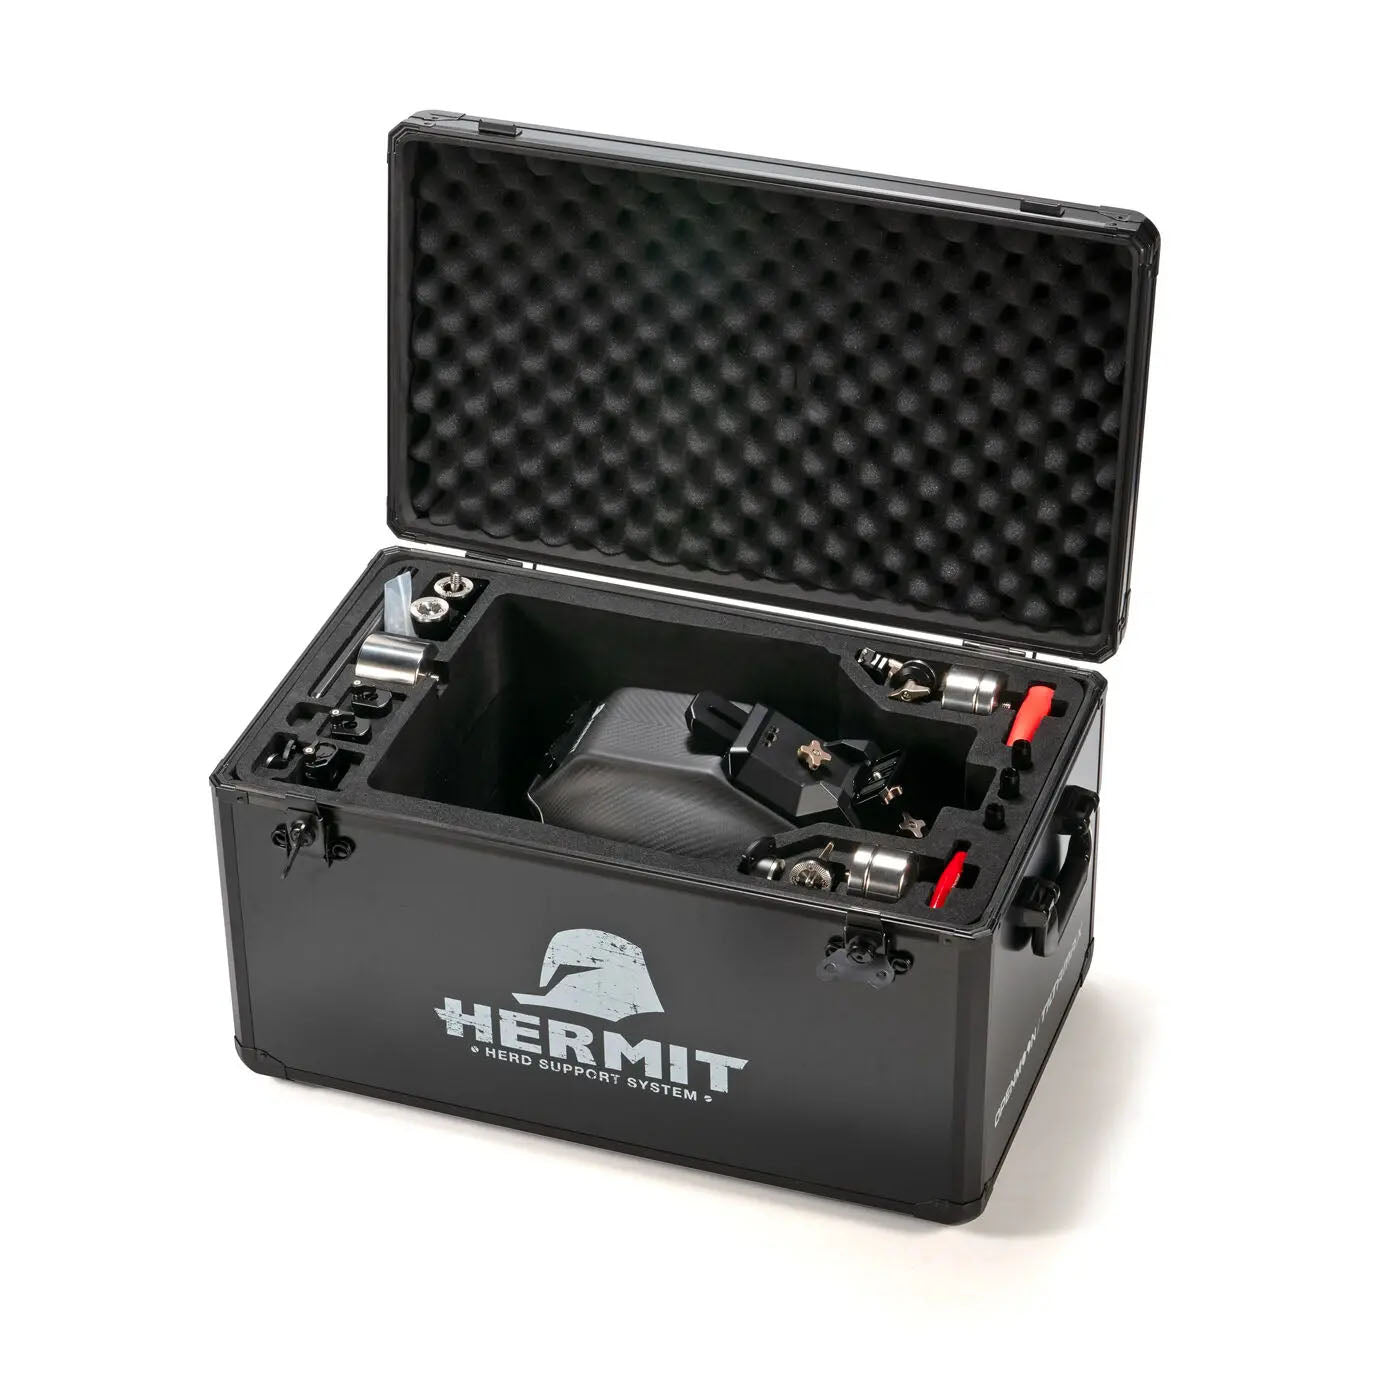 TILTA(ティルタ) Hermit POV Support System (ヘルメット) (L) - Gold Mount(アントンマウント) TA-HR-L-AB